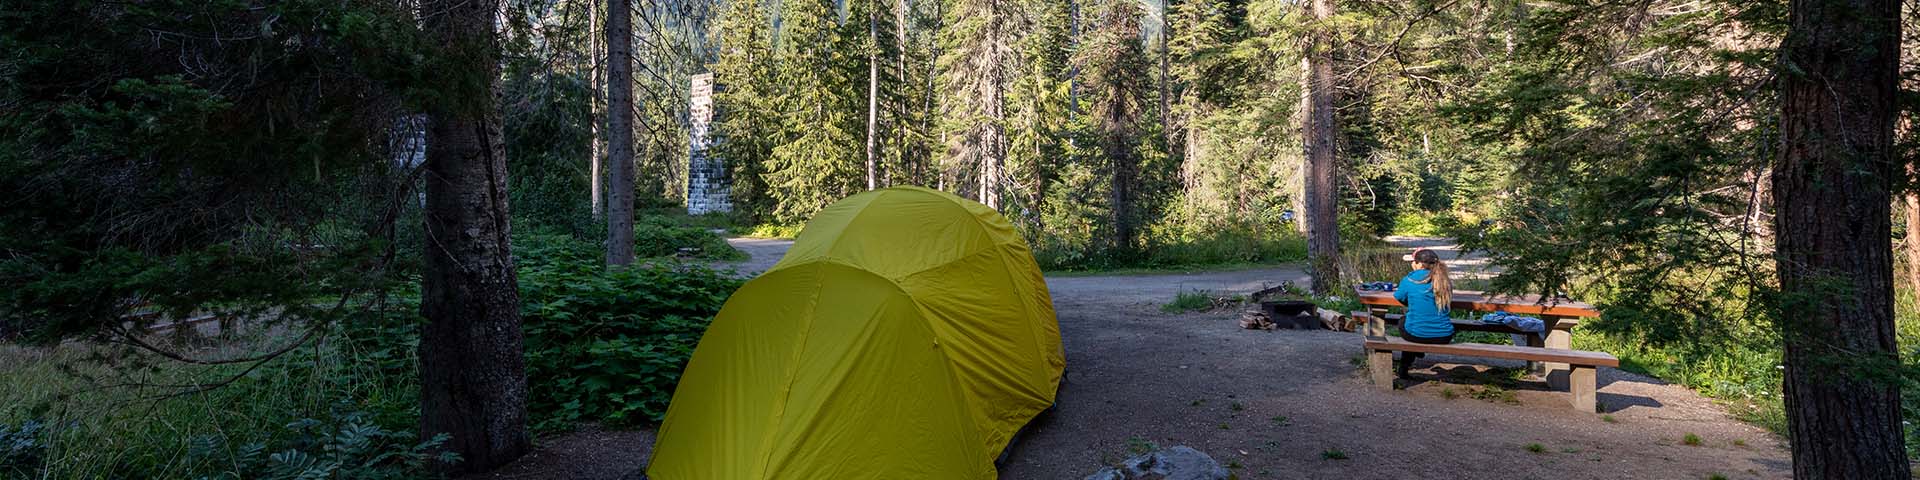 Une tente à côté d'une table de pique-nique dans un camping de l'avant-pays